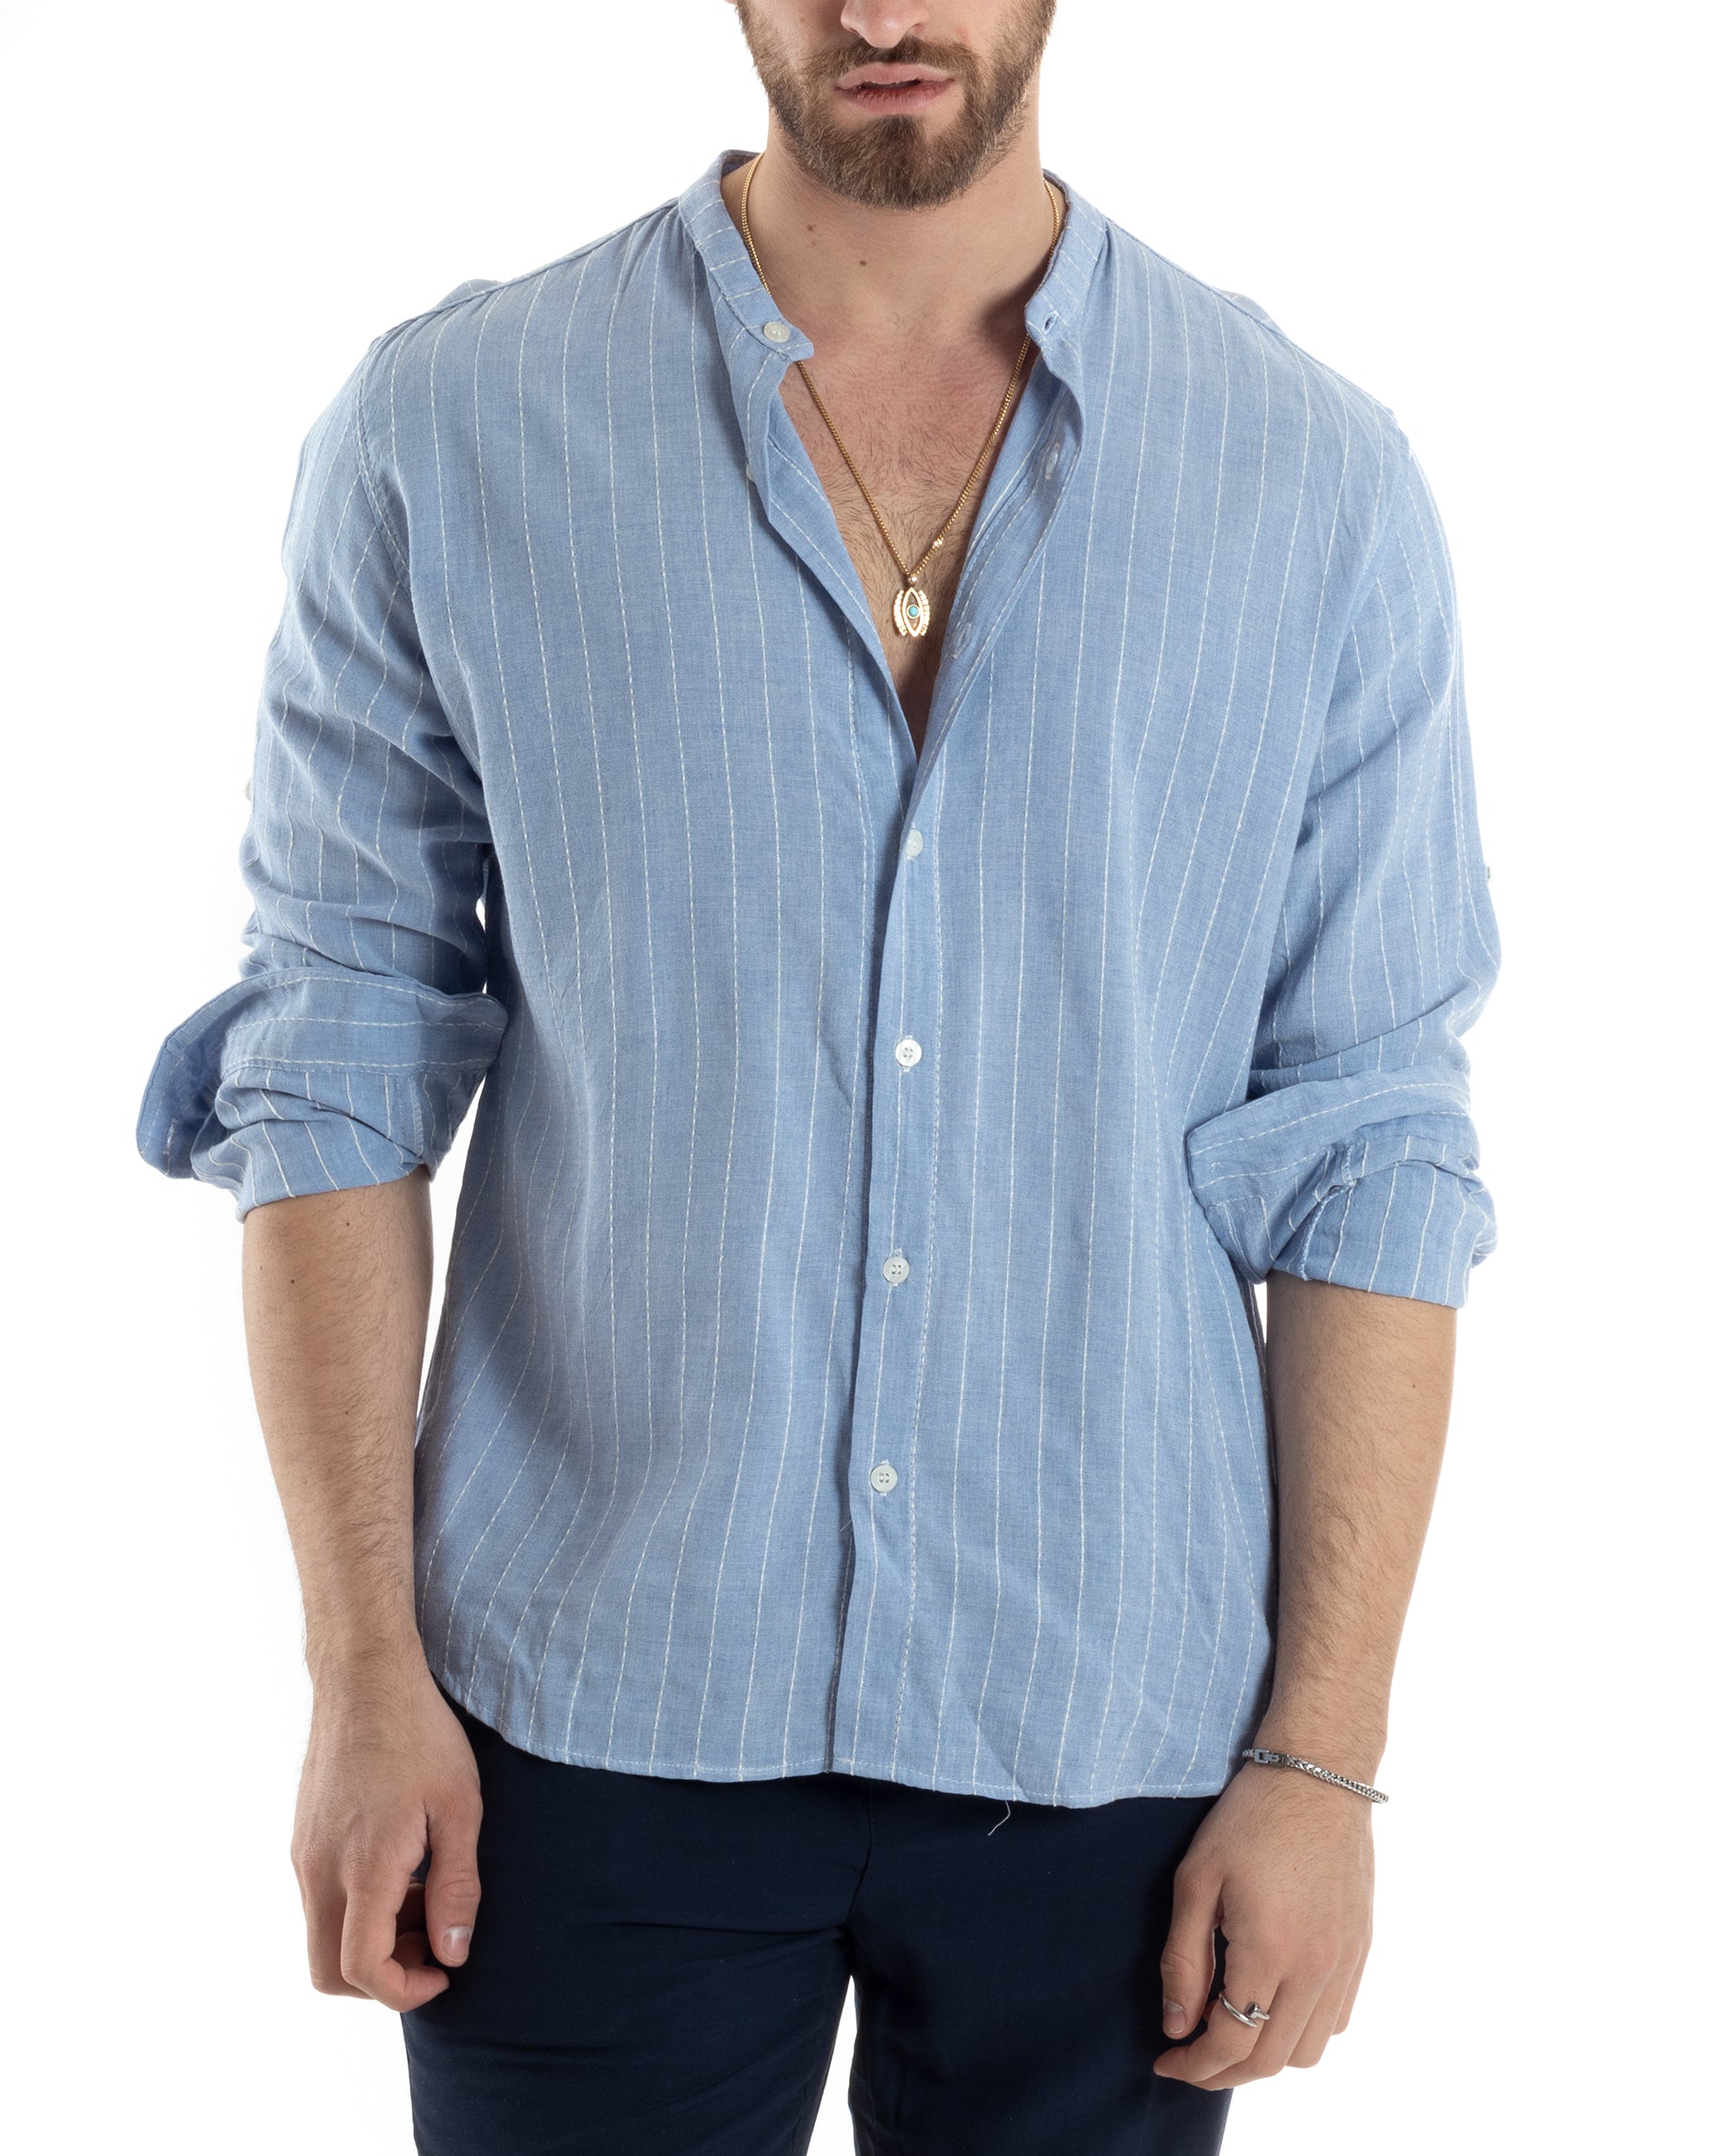 Men's Shirt Korean Collar Long Sleeve Linen Cotton Striped Beige GIOSAL-C2451A